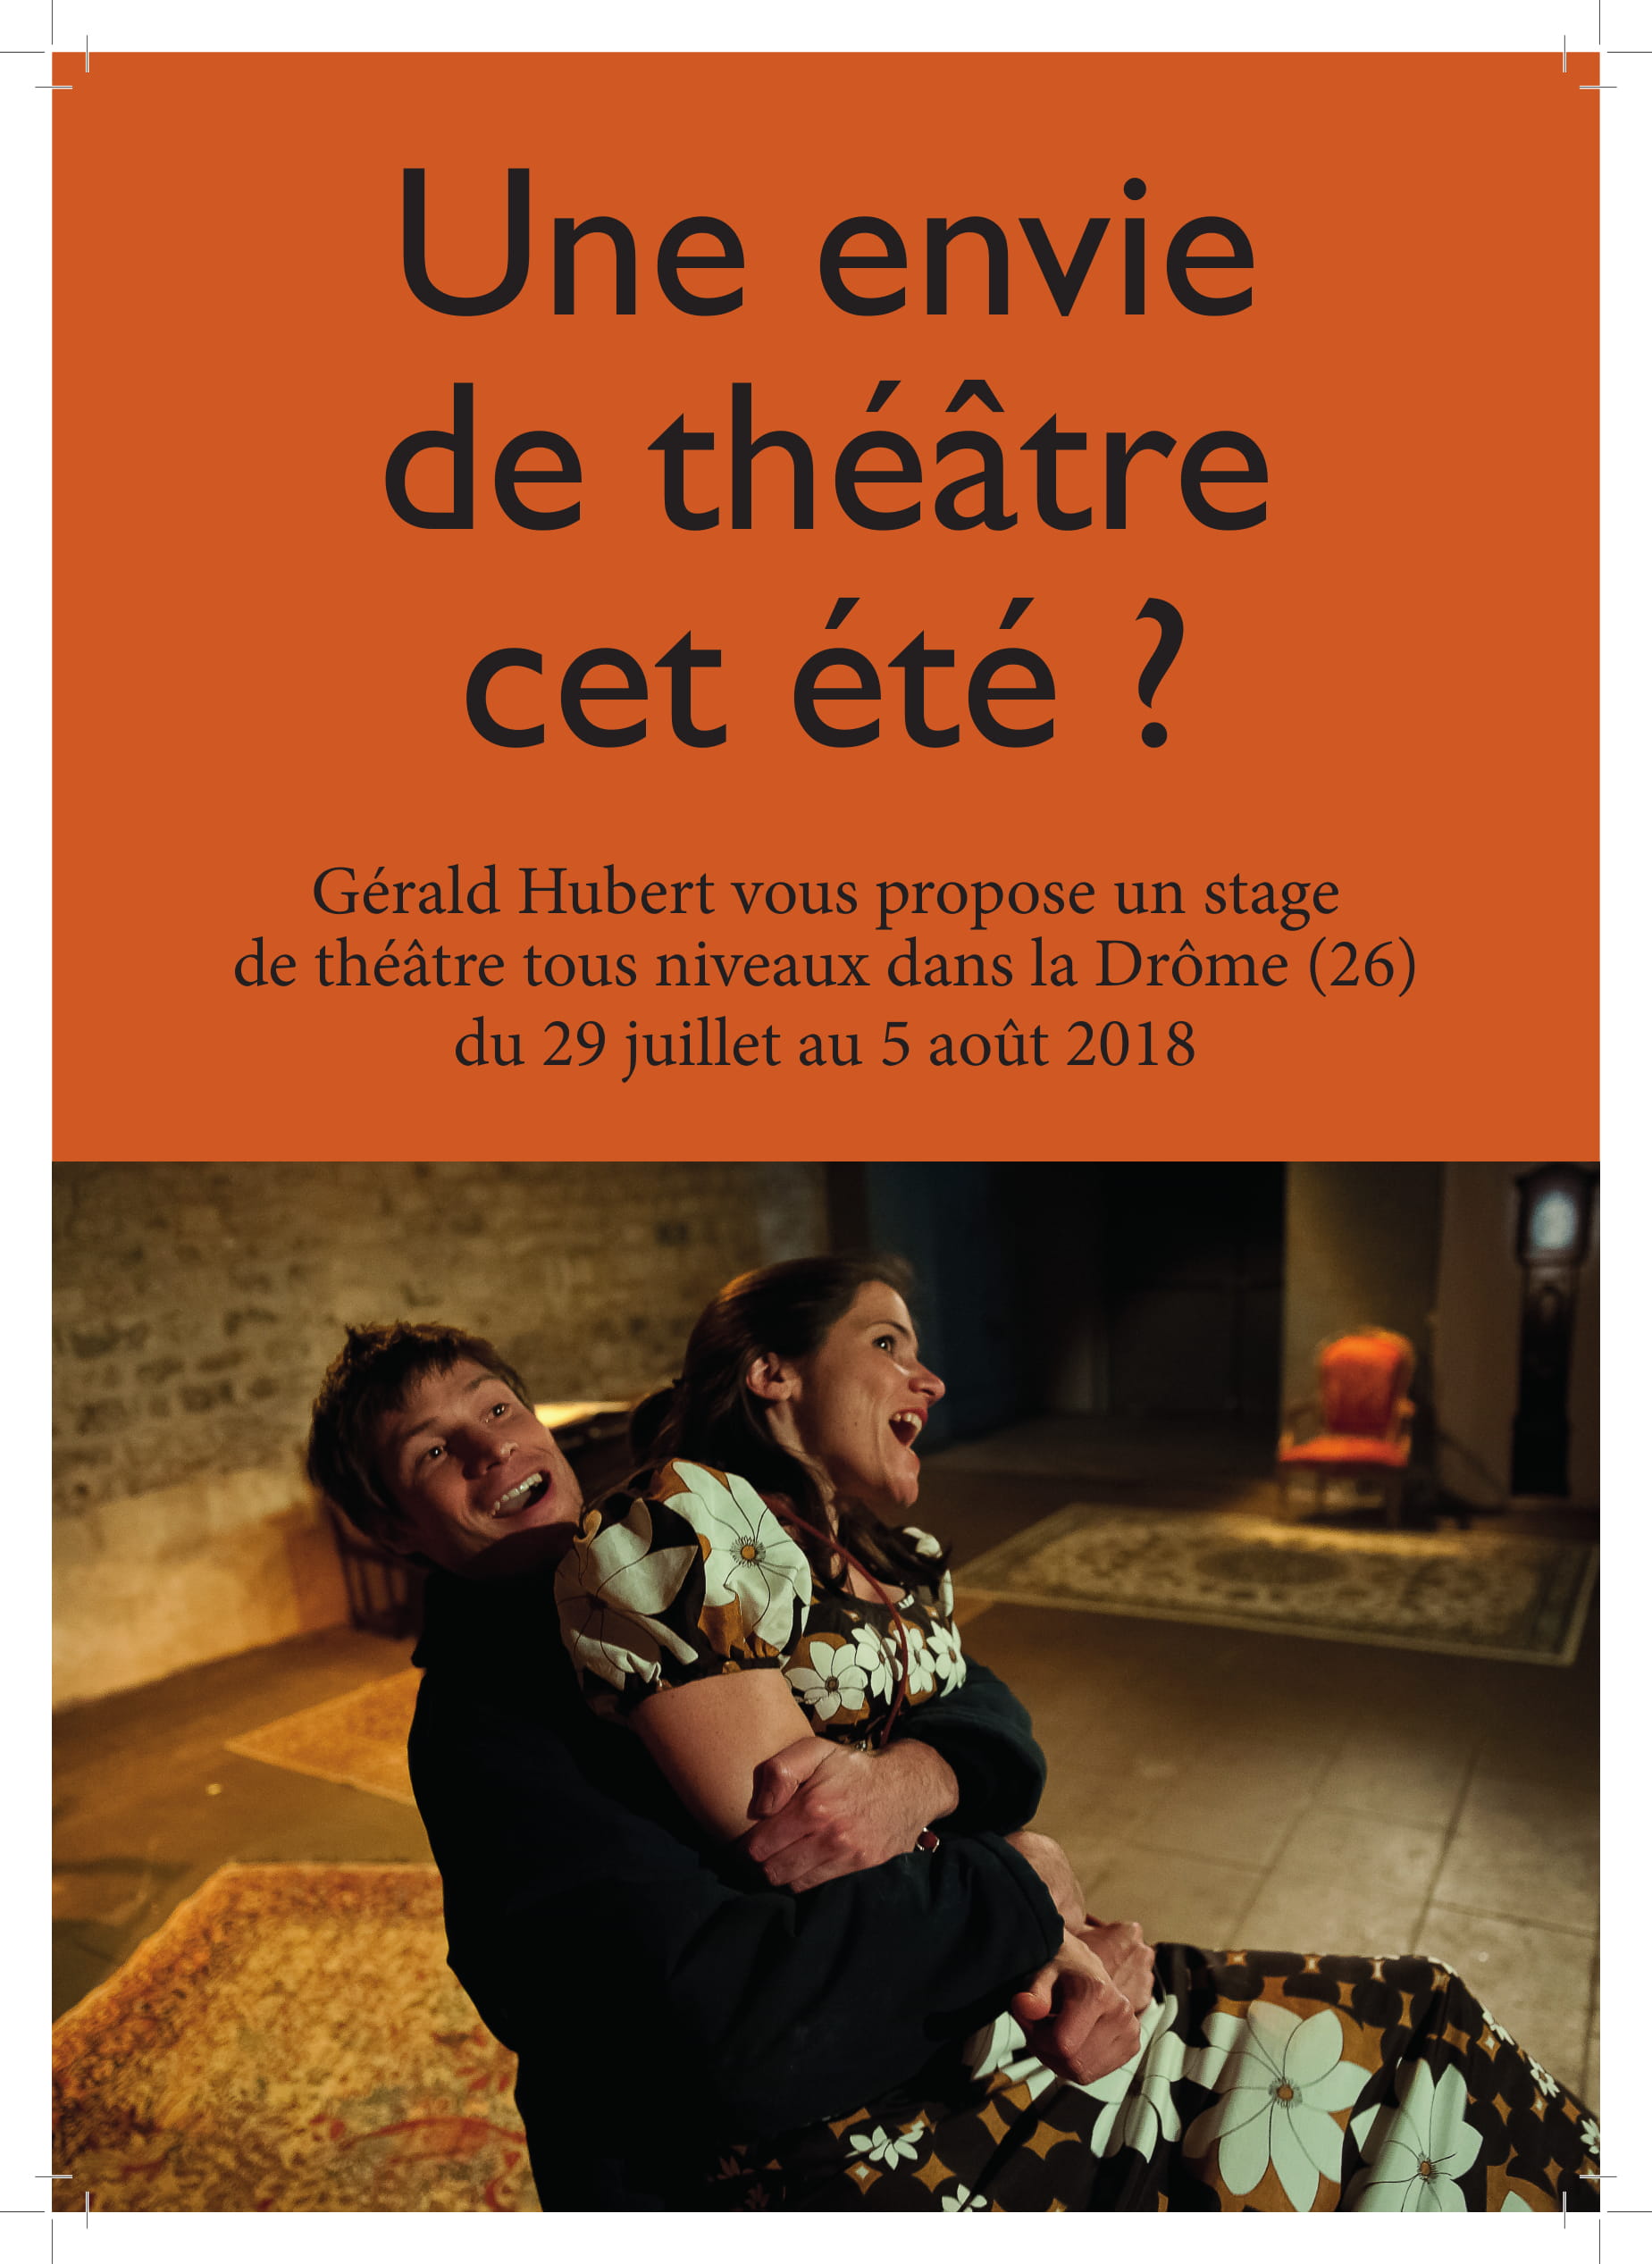 Gérald Hubert vous propose un stage de théâtre tous niveaux dans la Drôme (26) du 29 juillet au 5 août 2018. Eté 2018